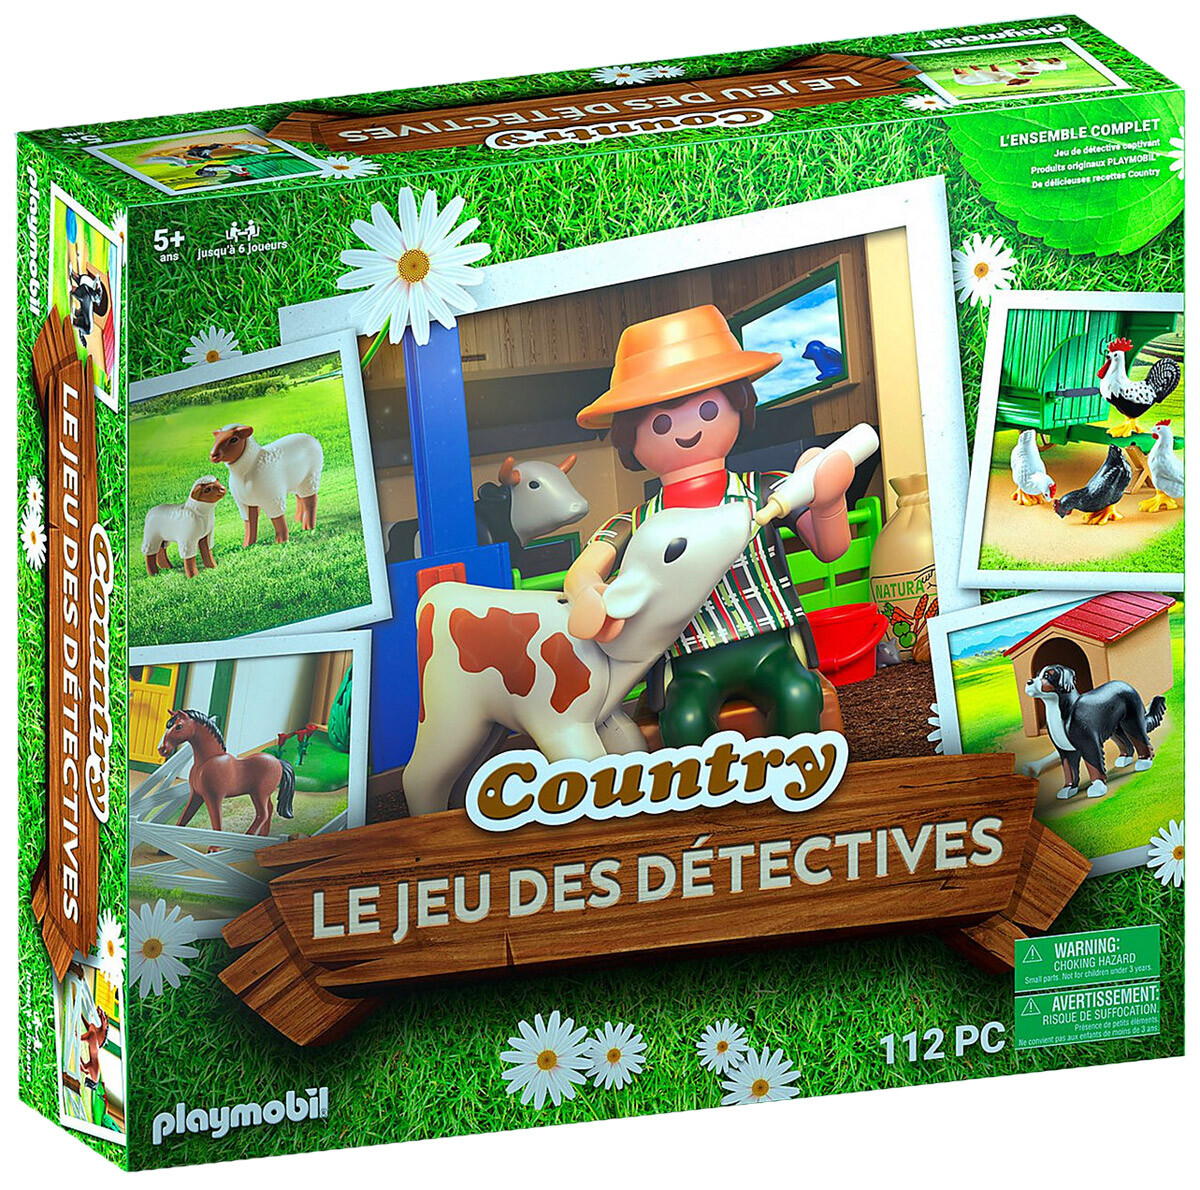 Le jeu de détective Country, Playmobil